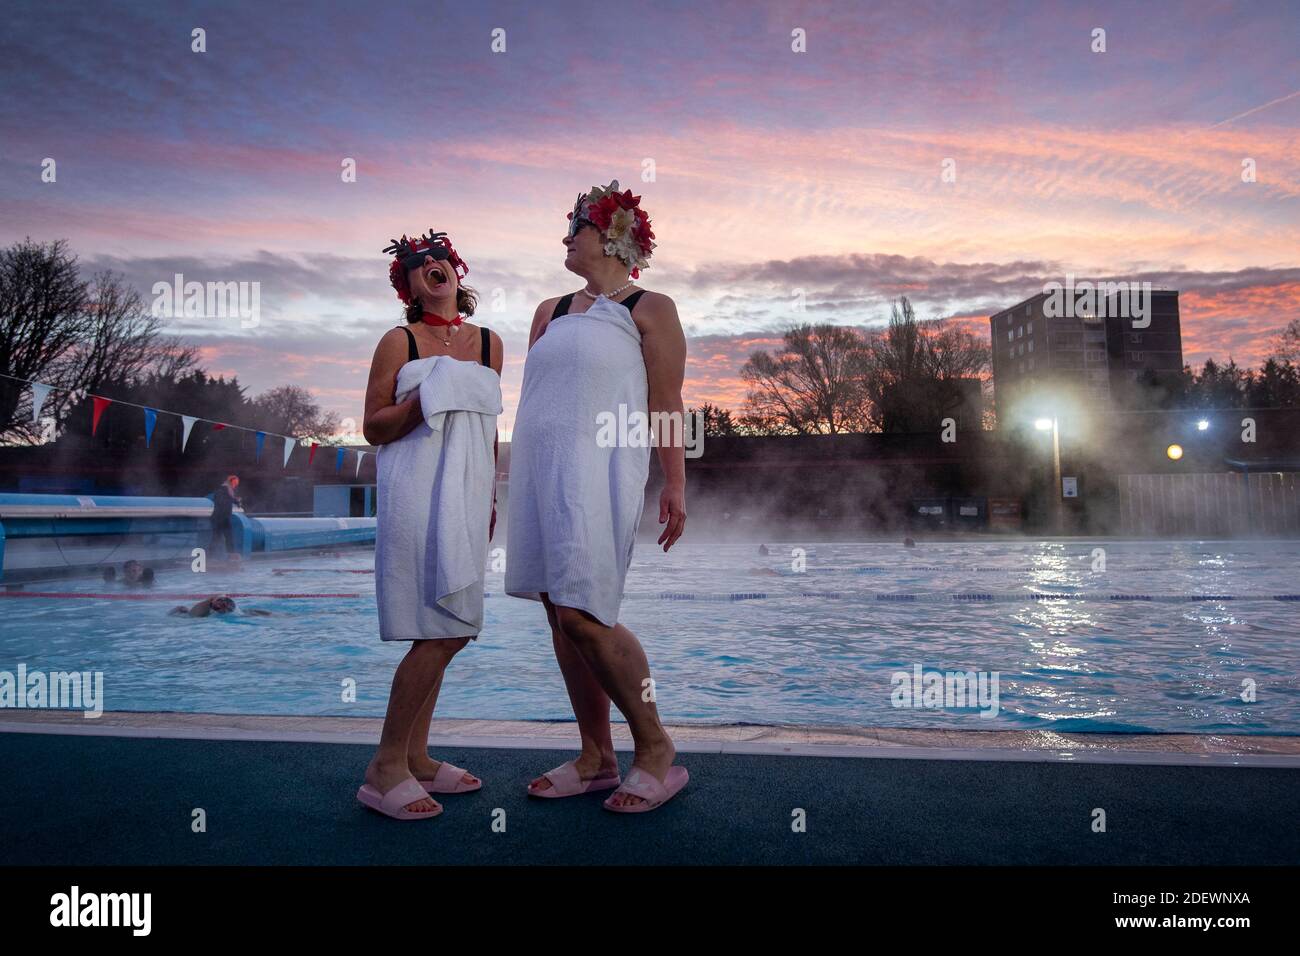 Nuotatori noti come Lido Ladies posano presso la piscina durante l'alba a Charlton Lido a Hornfair Park, Londra, il suo primo giorno di riapertura dopo la fine del secondo blocco nazionale e l'Inghilterra entra in un sistema rafforzato di restrizioni regionali del coronavirus. Foto Stock